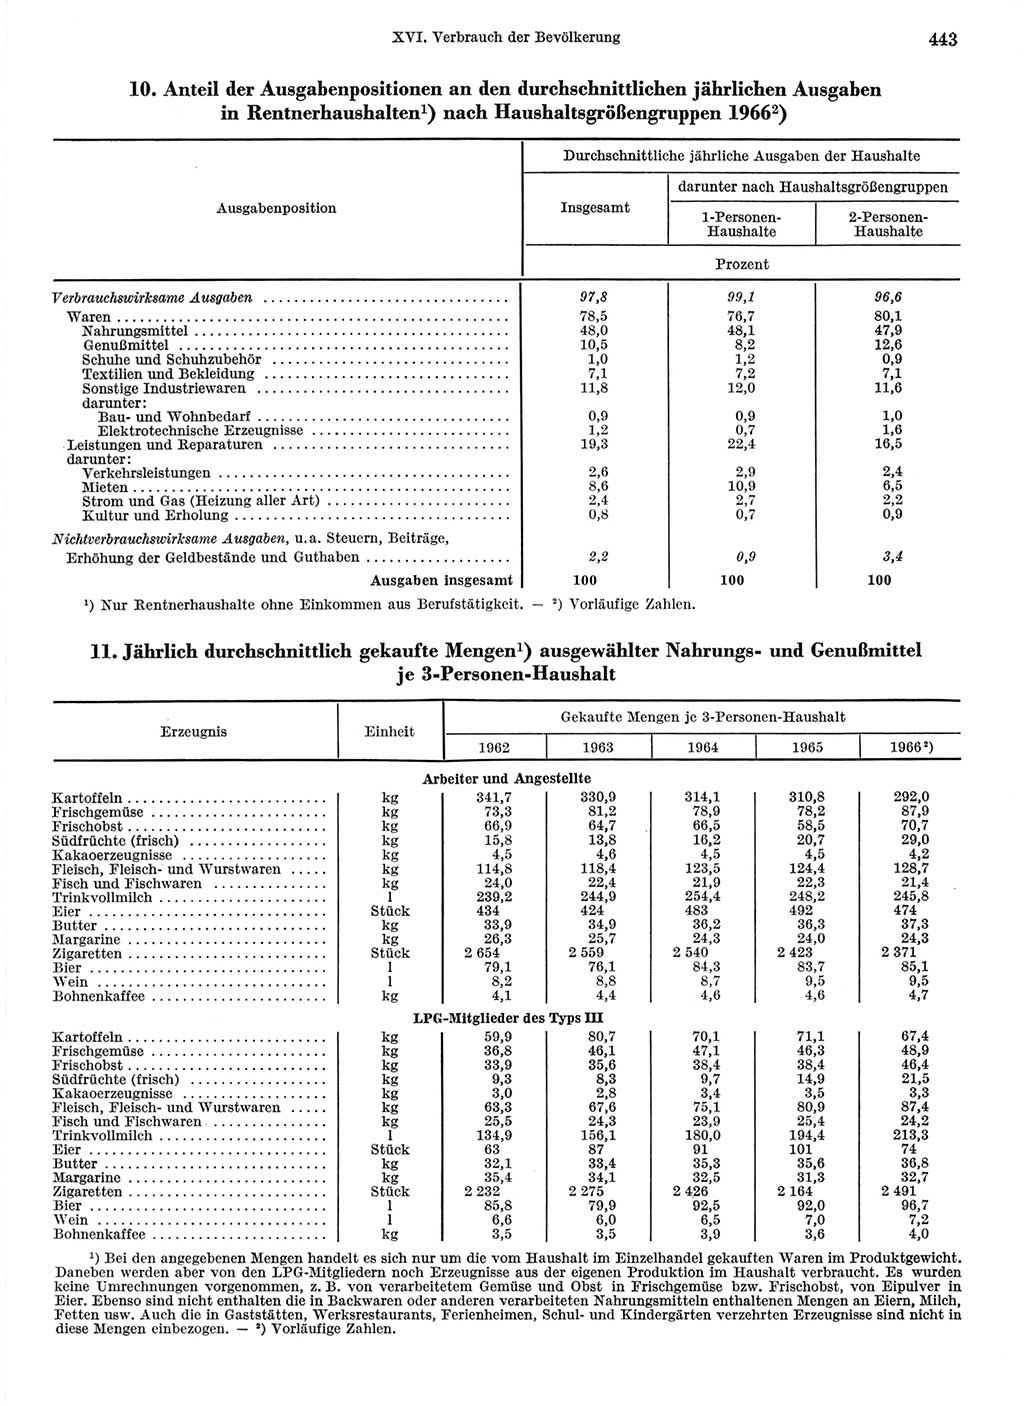 Statistisches Jahrbuch der Deutschen Demokratischen Republik (DDR) 1968, Seite 443 (Stat. Jb. DDR 1968, S. 443)